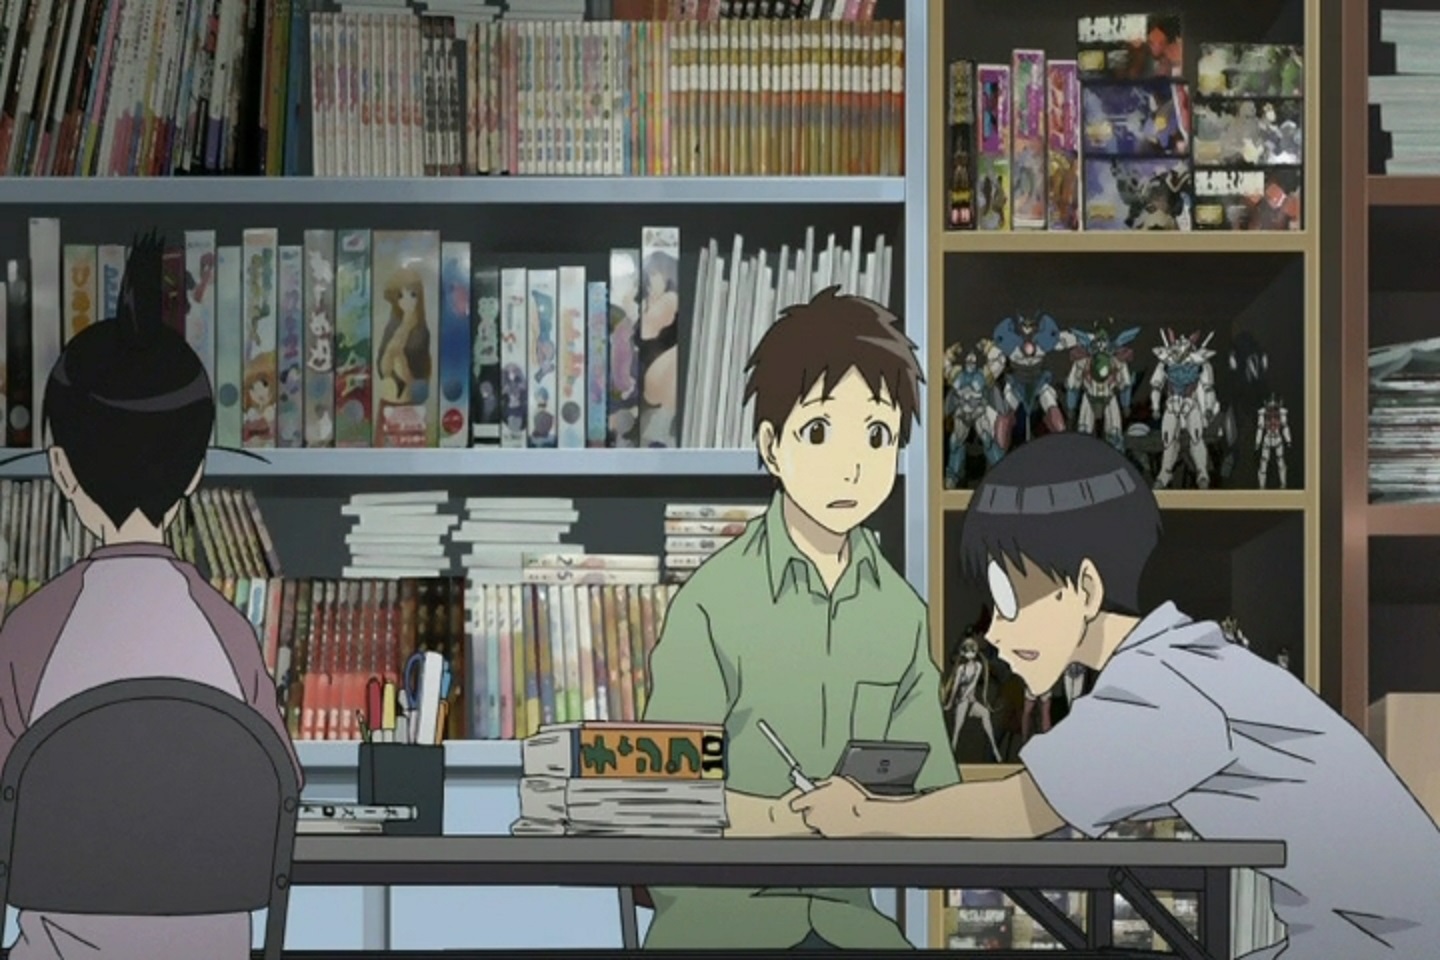 A certain high school group | Anime, Anime images, Short hair blue